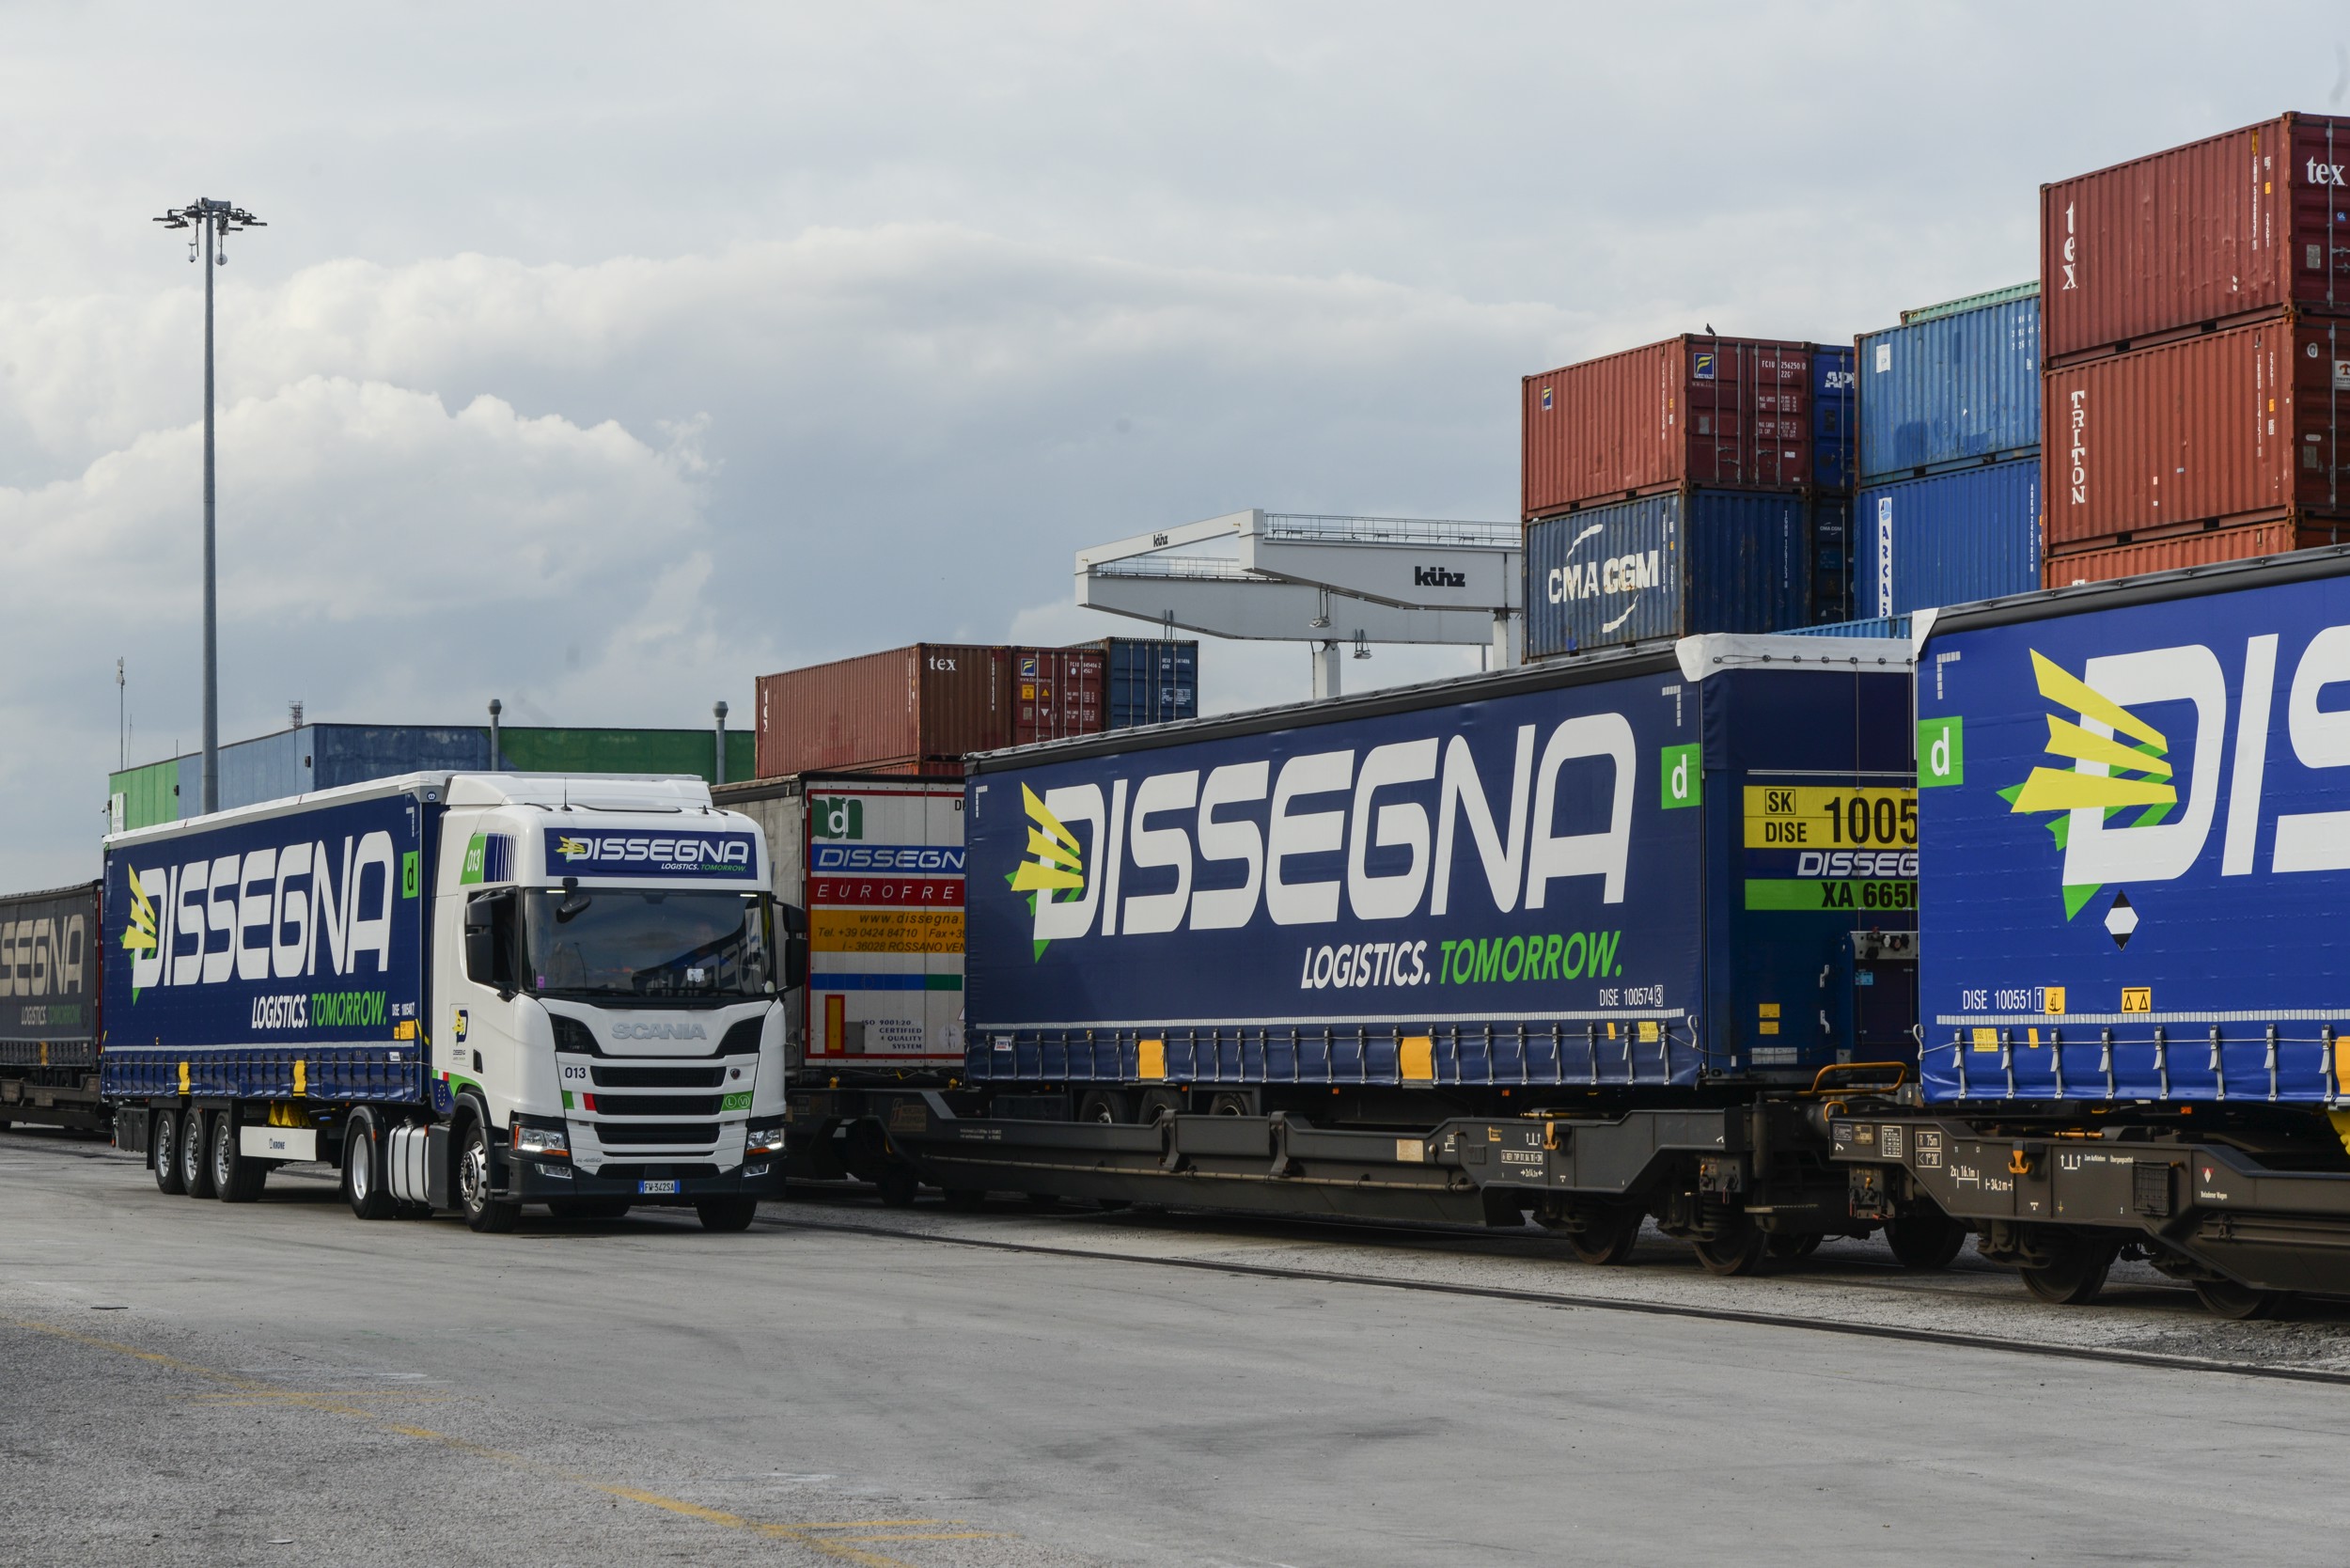 Interporto Padova: Dissegna Logistics amplia il polo logistico